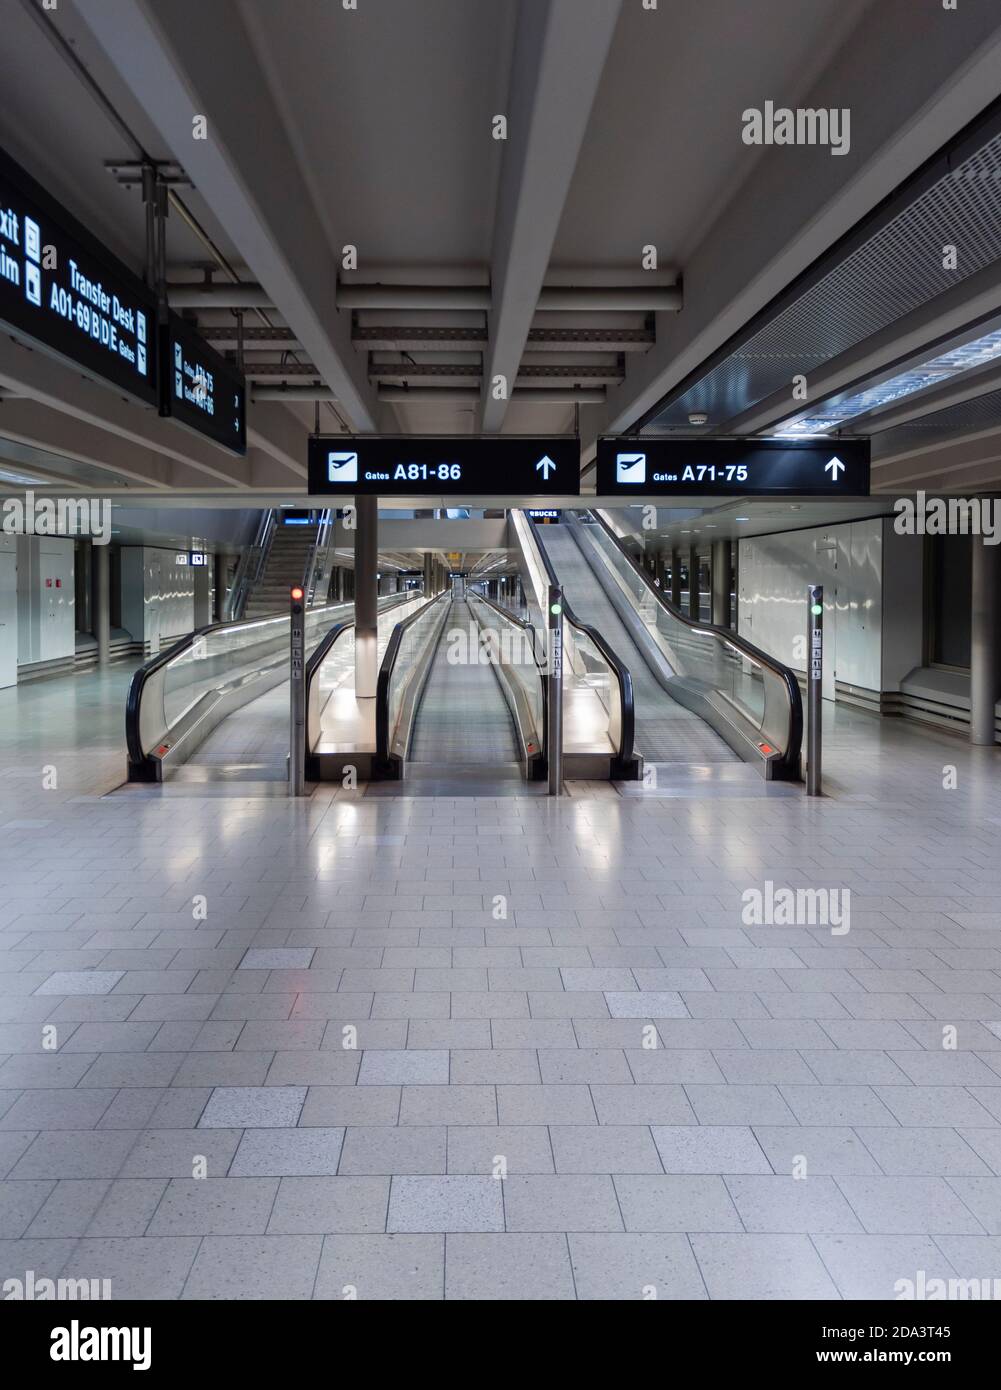 Zurich, Suiza - 13 Oct 2020: Escaleras mecánicas vacías en el edificio terminal del aeropuerto de Zurich Kloten. Debido a la pandemia mundial de Covid, los viajes aéreos Foto de stock